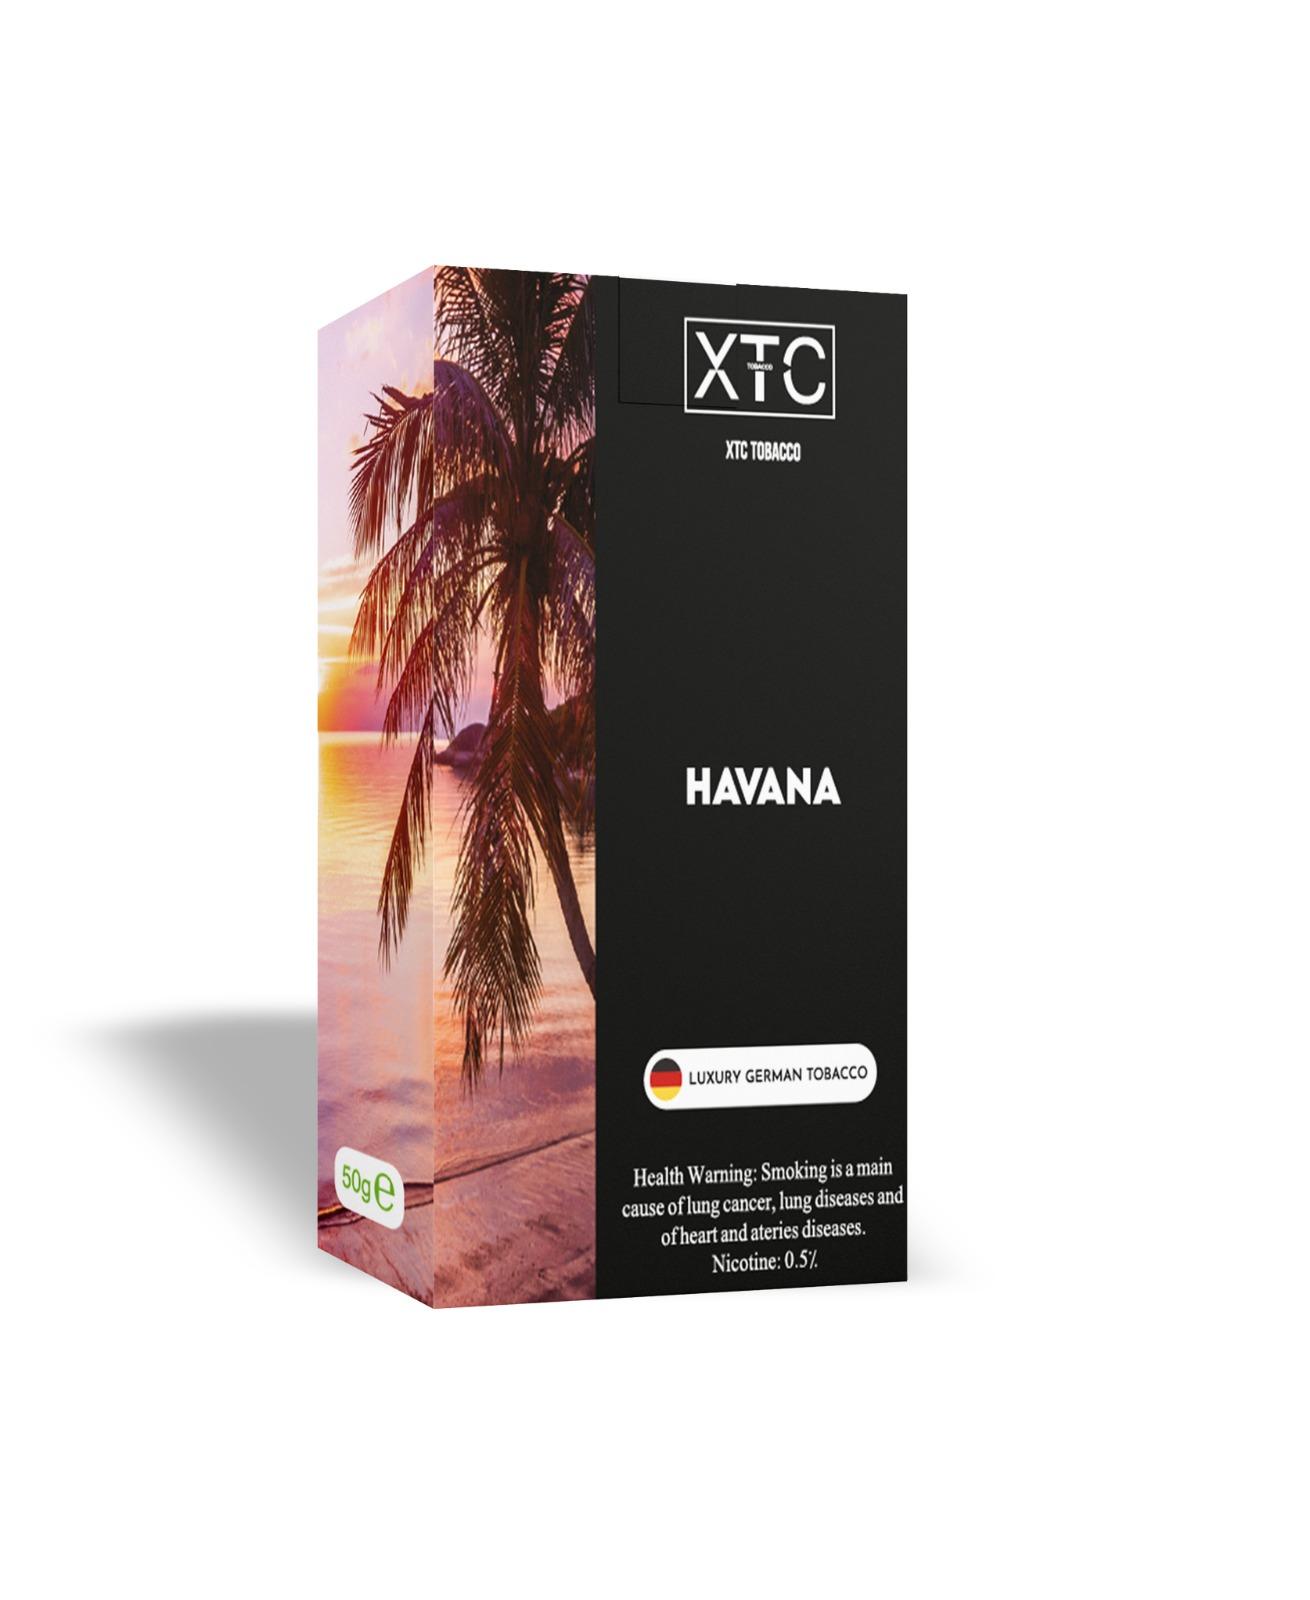 Image of XTC Tobacco product Havana